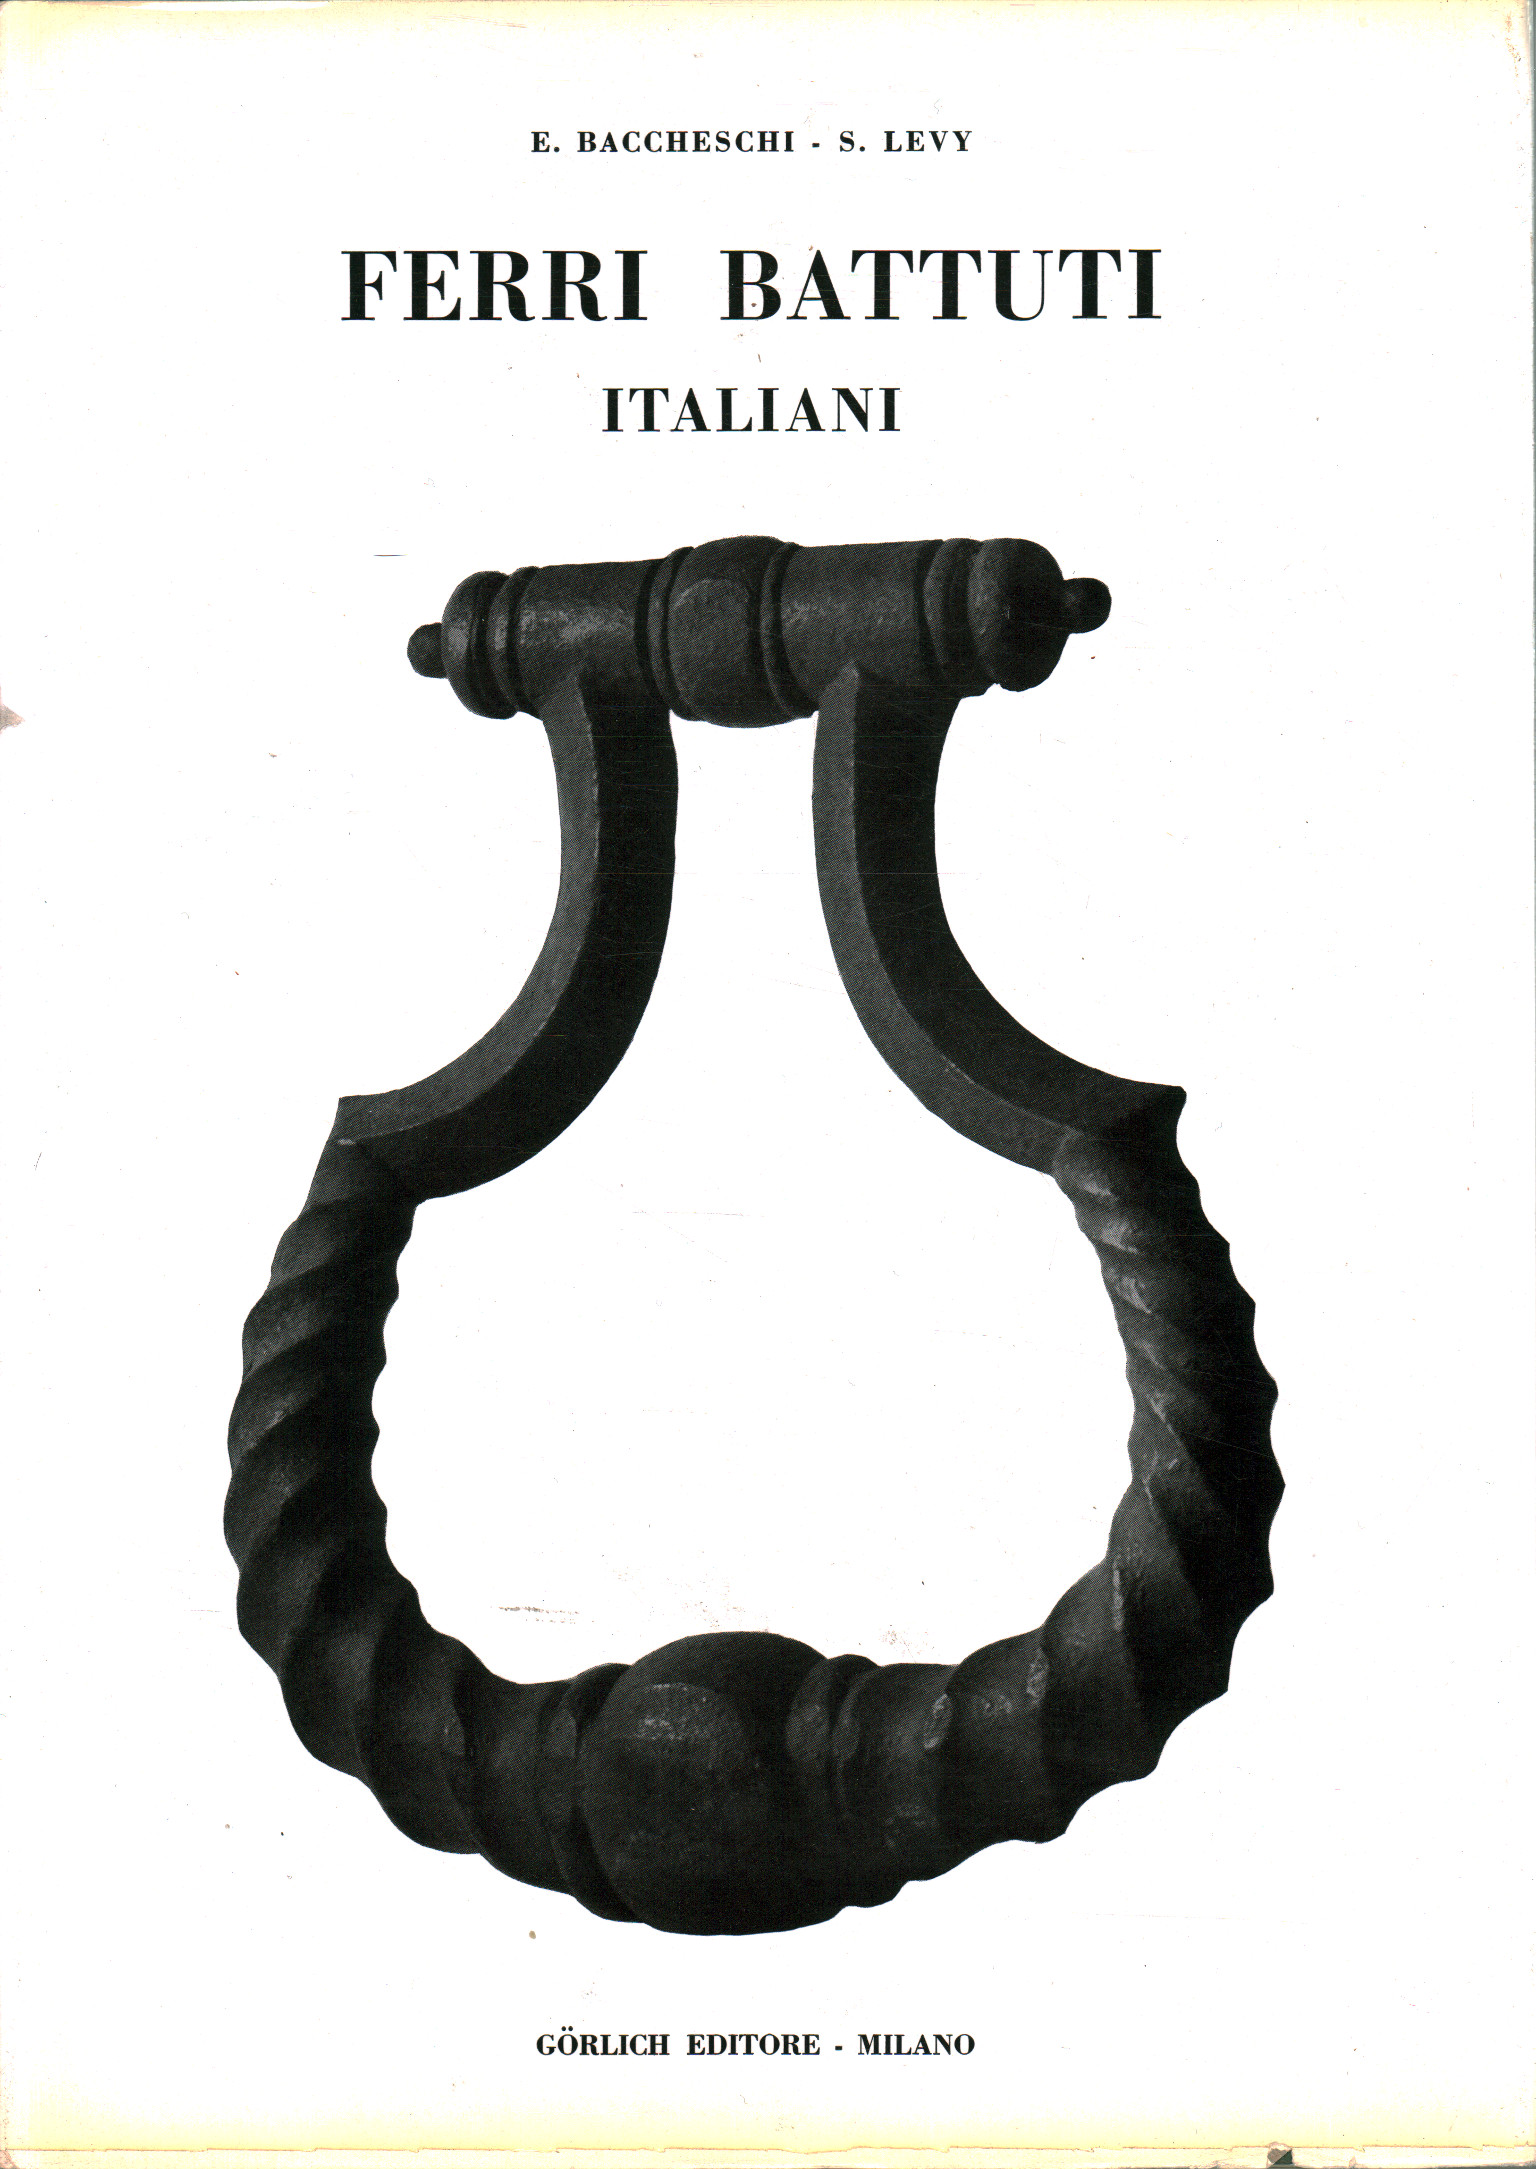 hierro forjado italiano